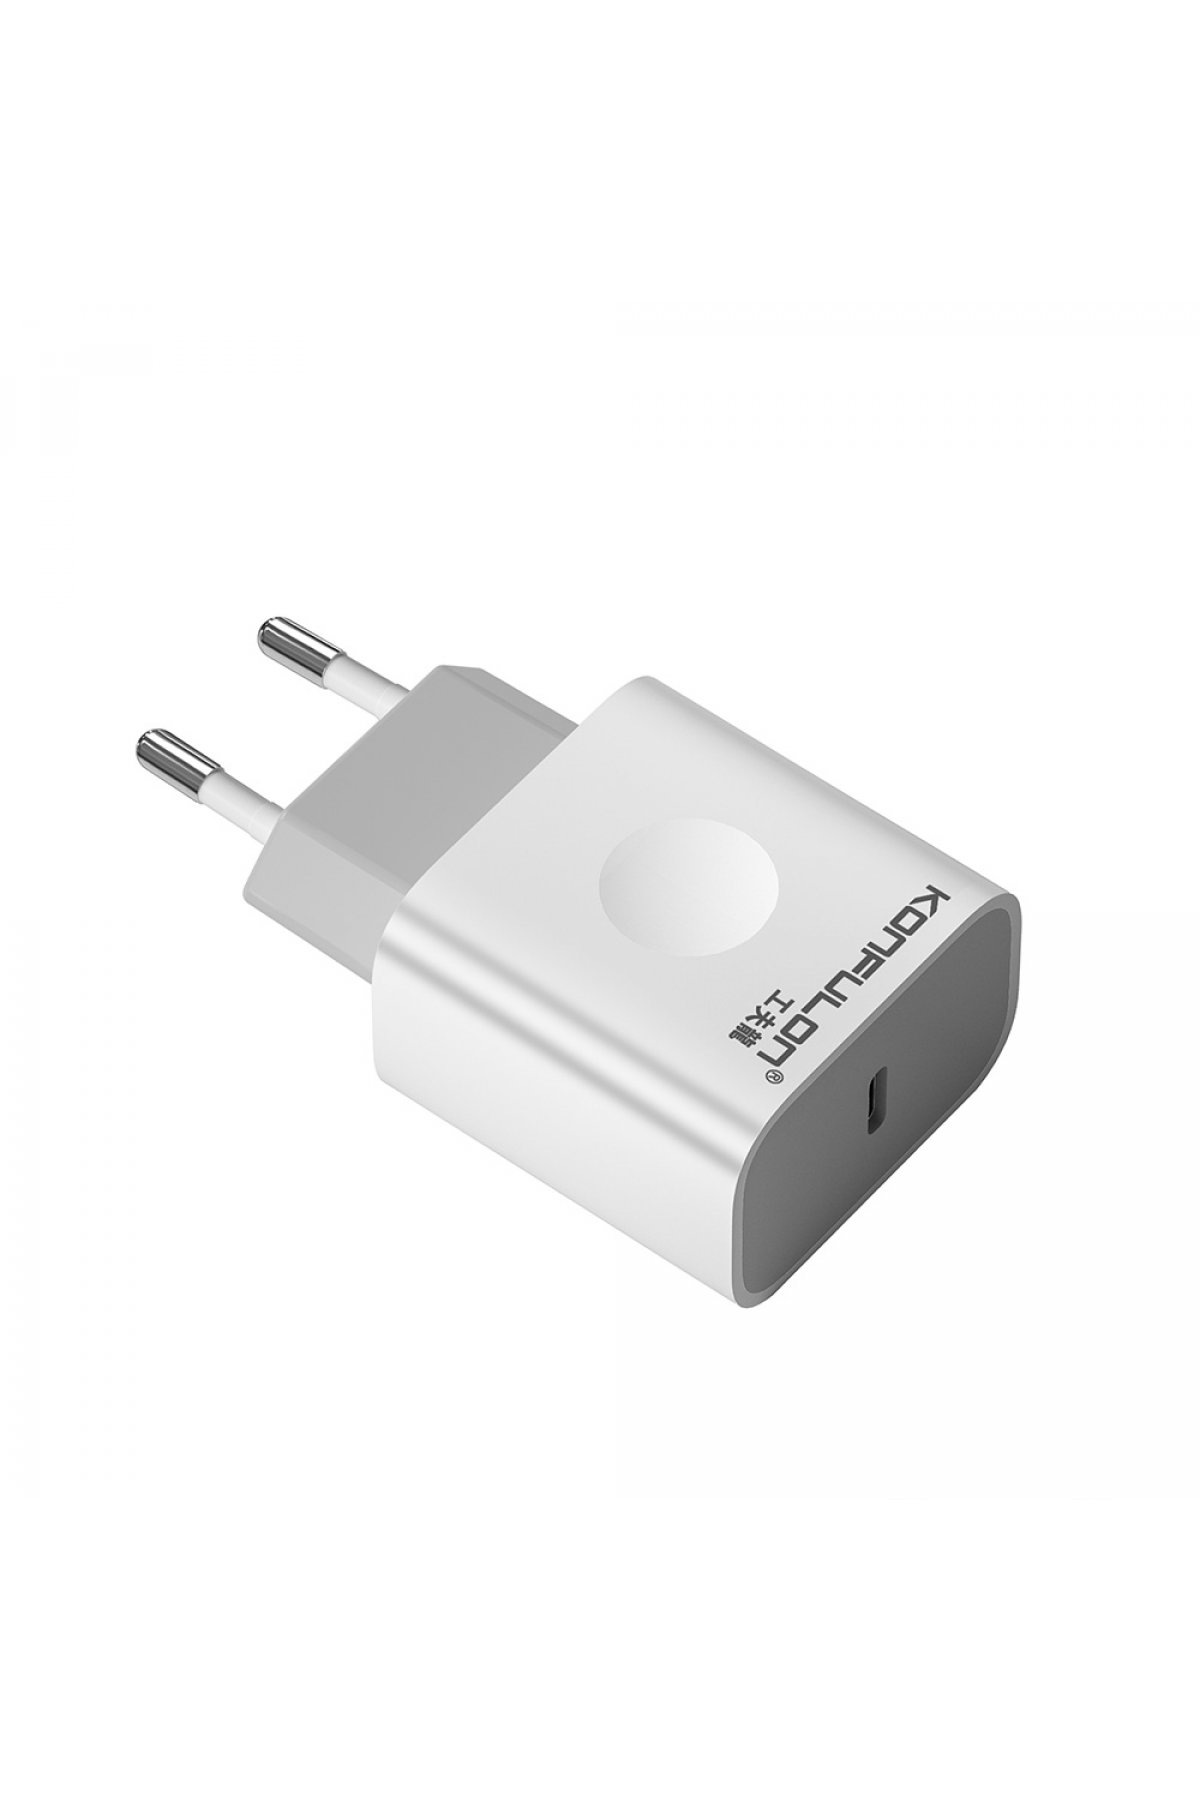 Konfulon DC01 Süper Hızlı Micro USB Kablo 1M 2.4A - Beyaz